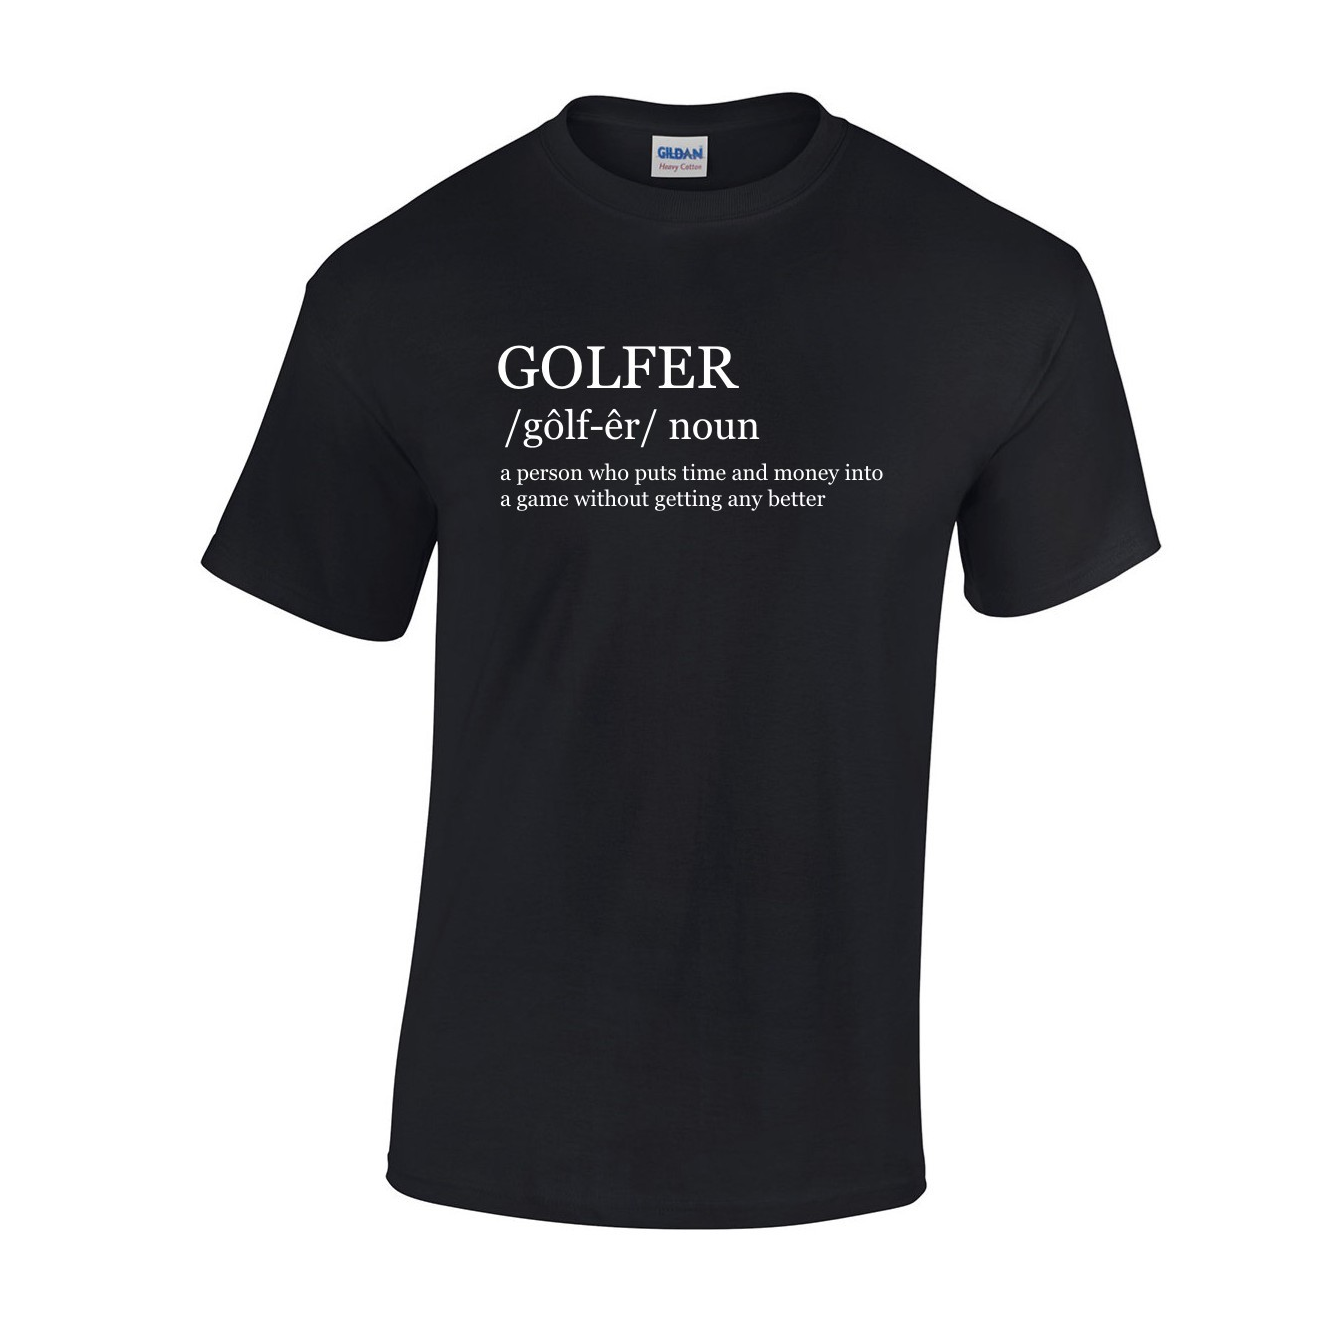 golfer definition shirt